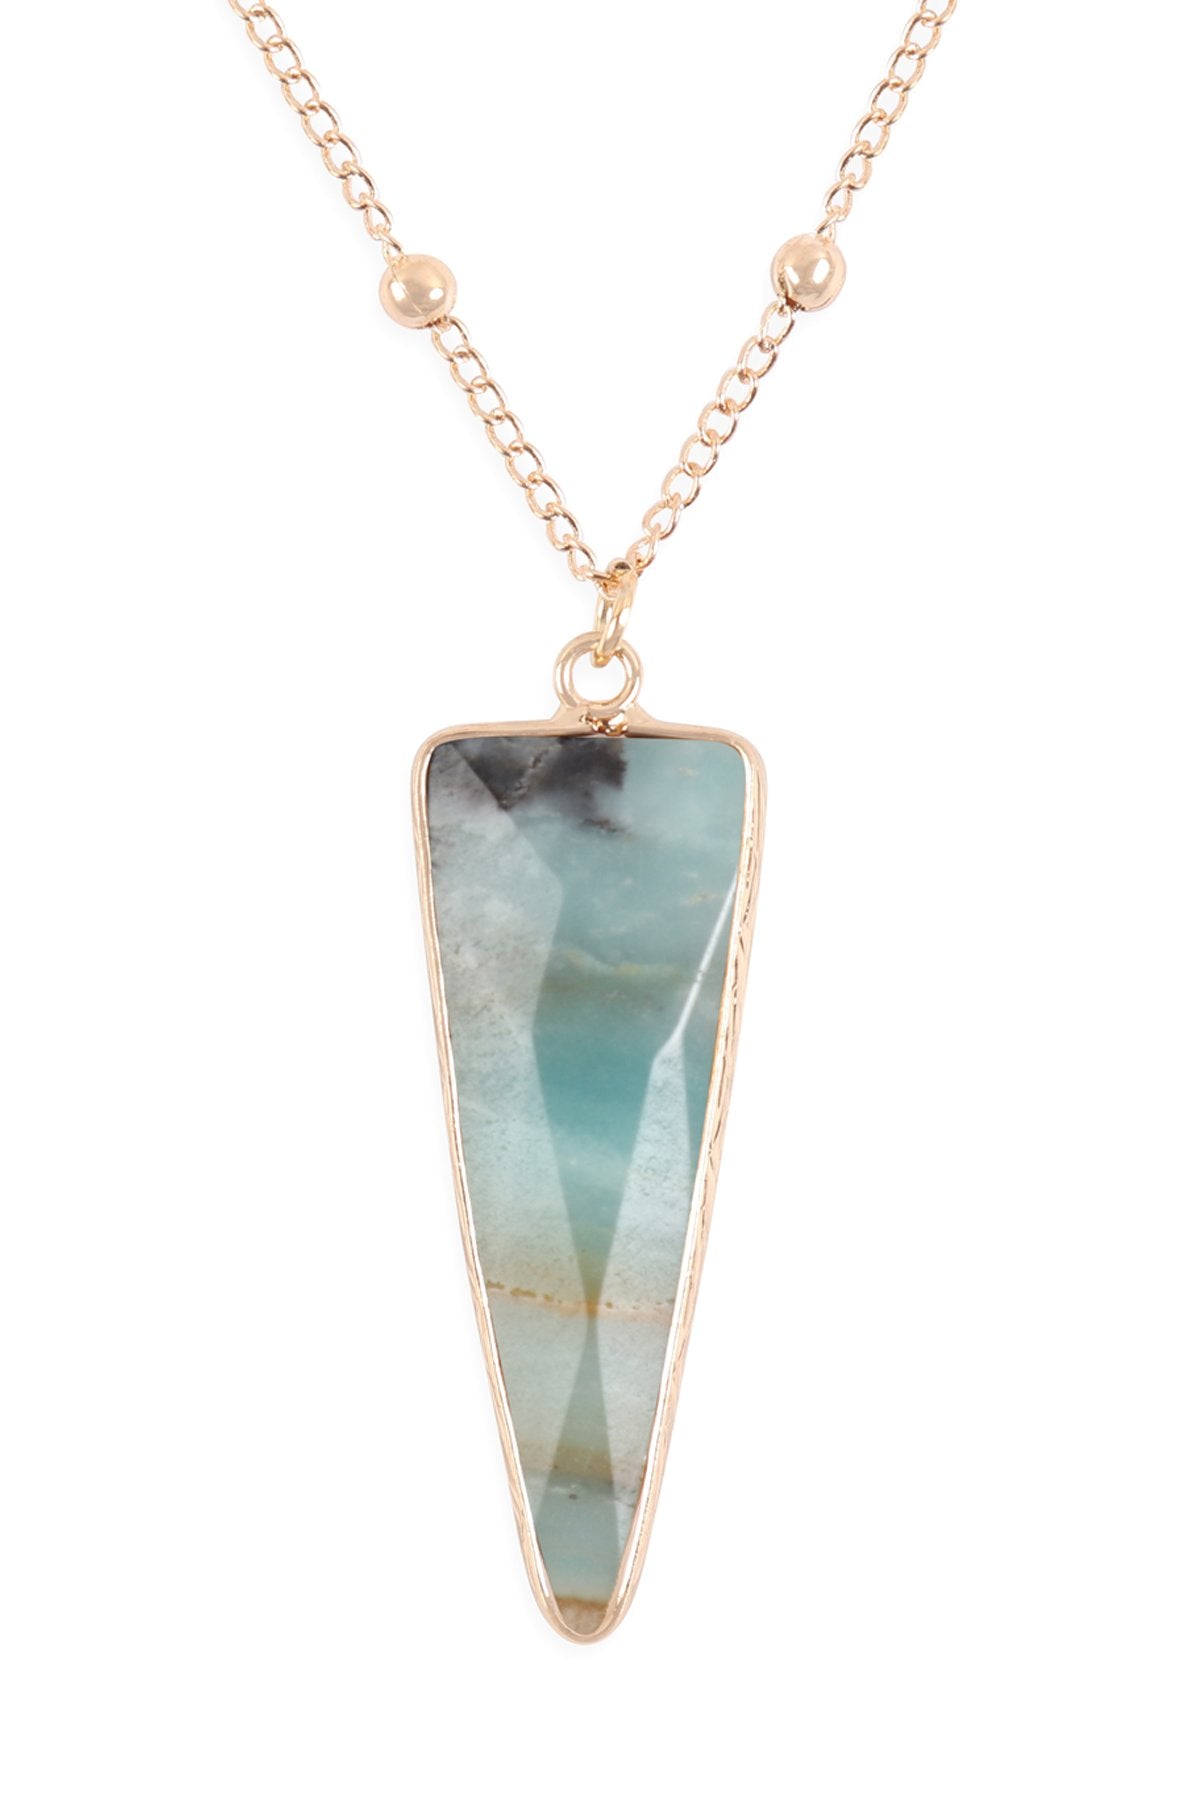 Arrowhead Shape Stone Pendant Necklace- 6 Colors